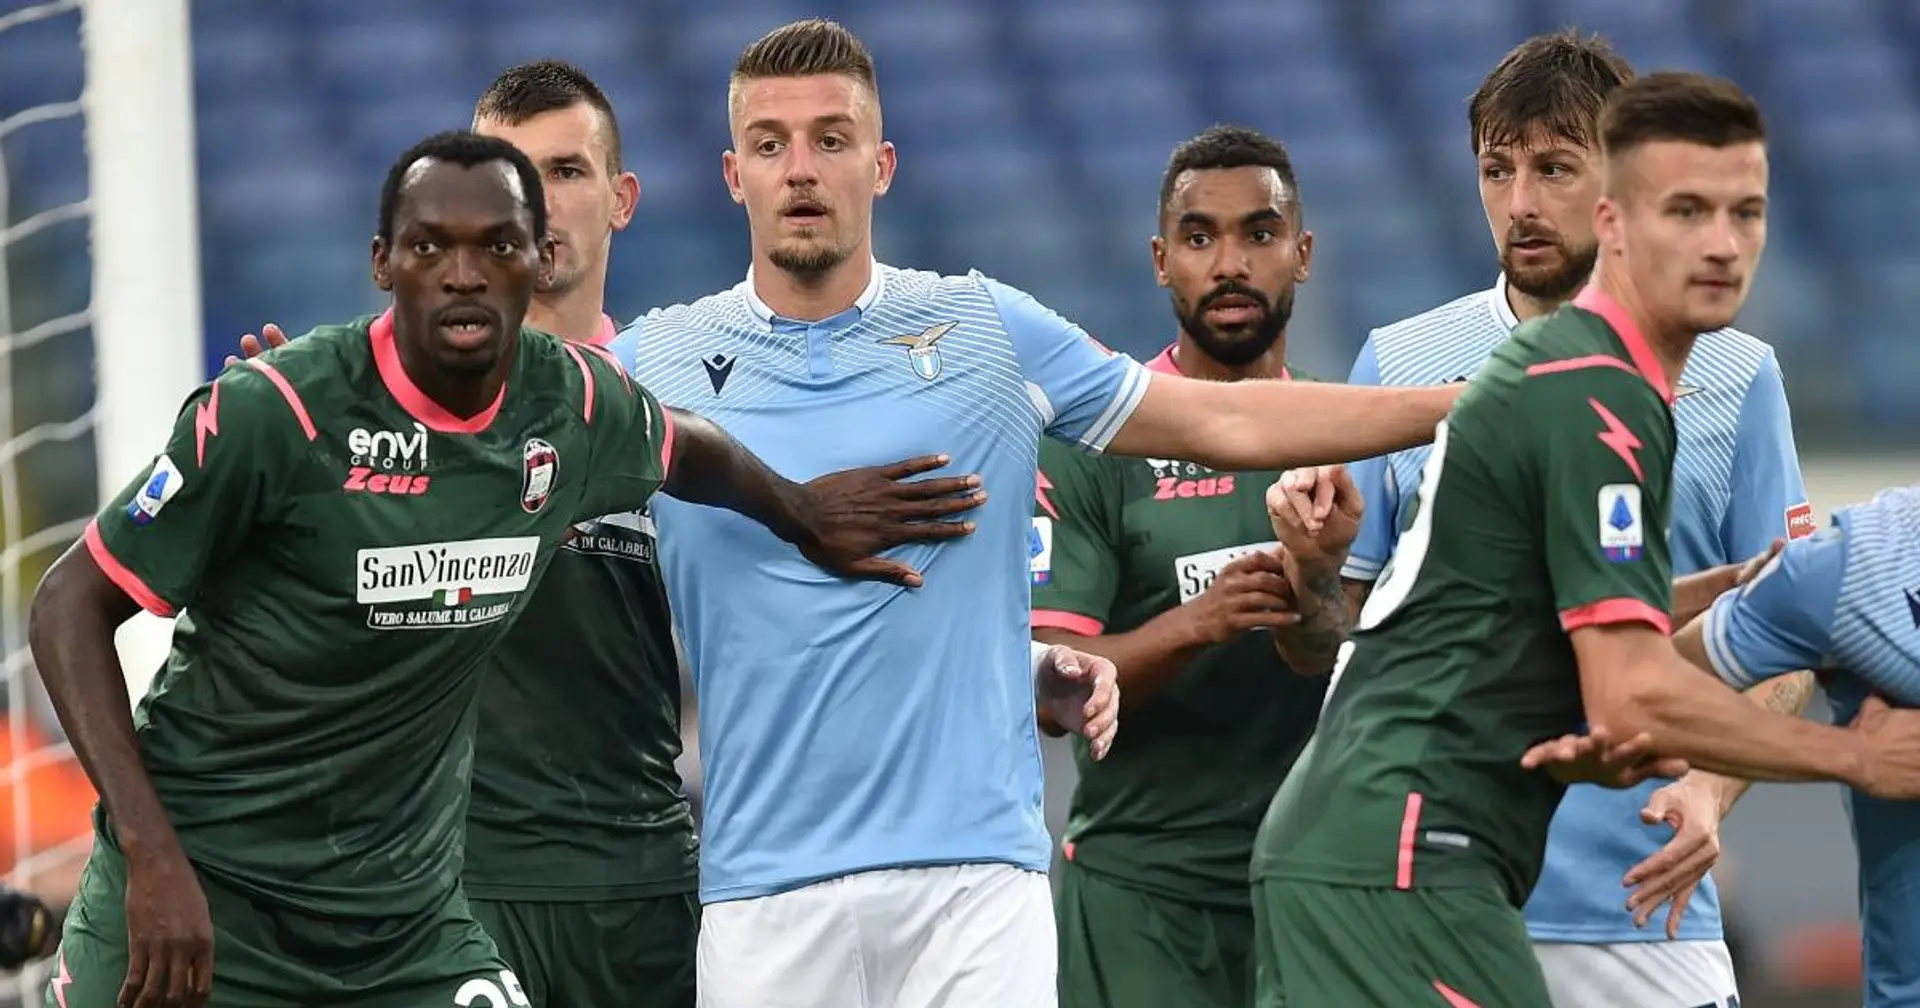 Gegnerübersicht: Lazio Rom feiert einen hart umkämpften Sieg gegen Tabellenschlusslicht Crotone